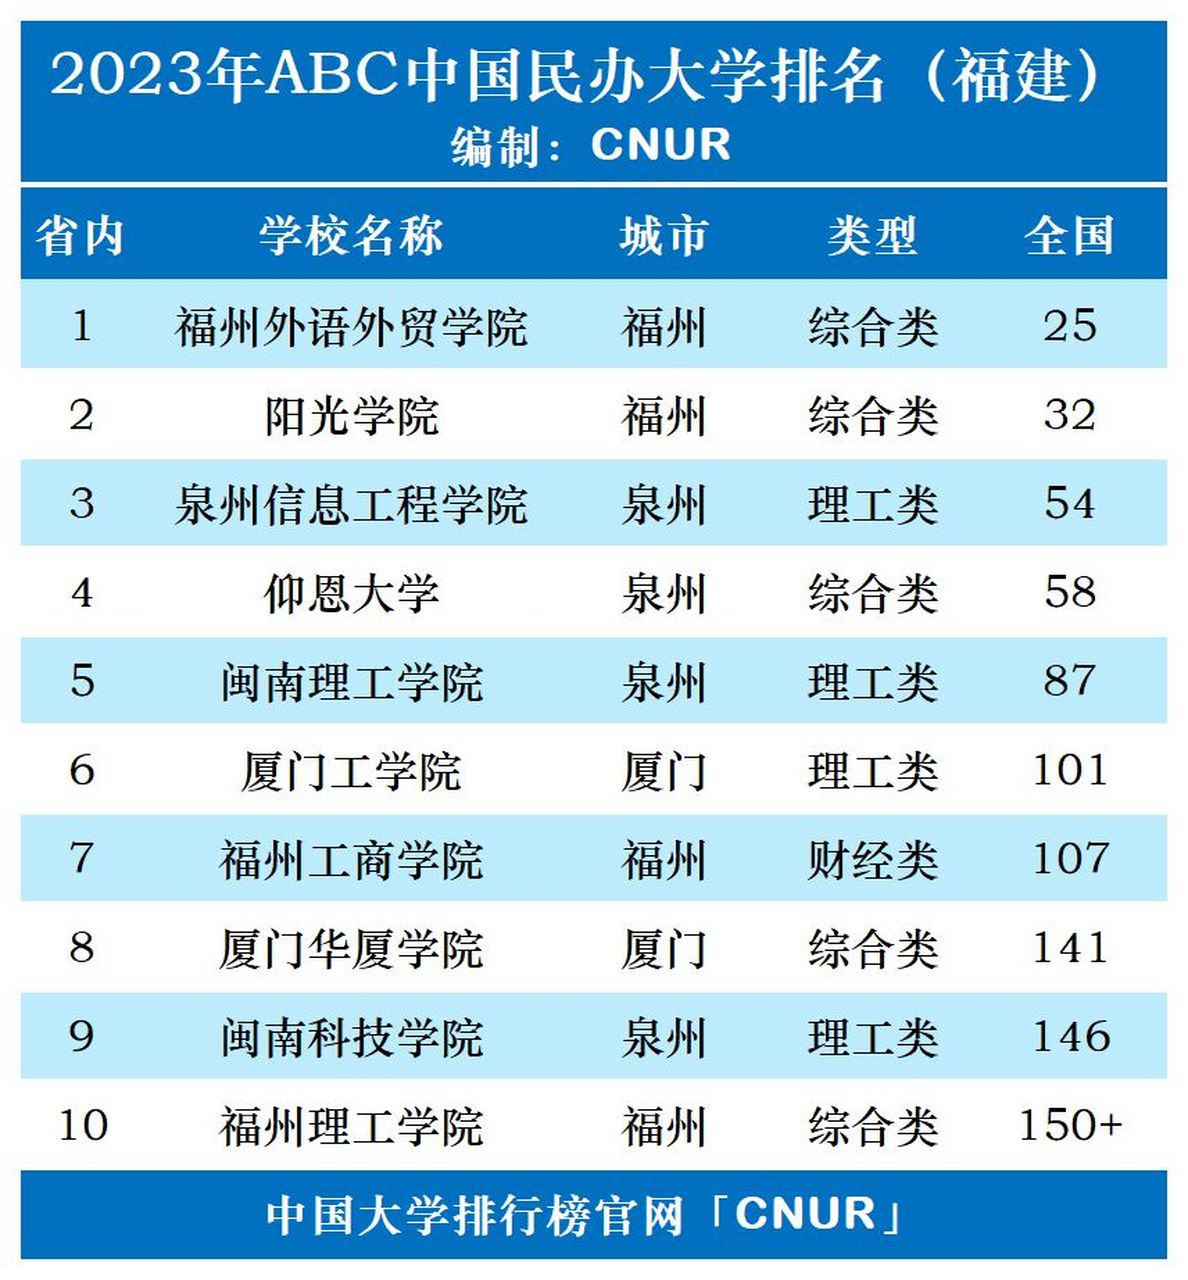 2023年福建省民办大学最新排名发布!